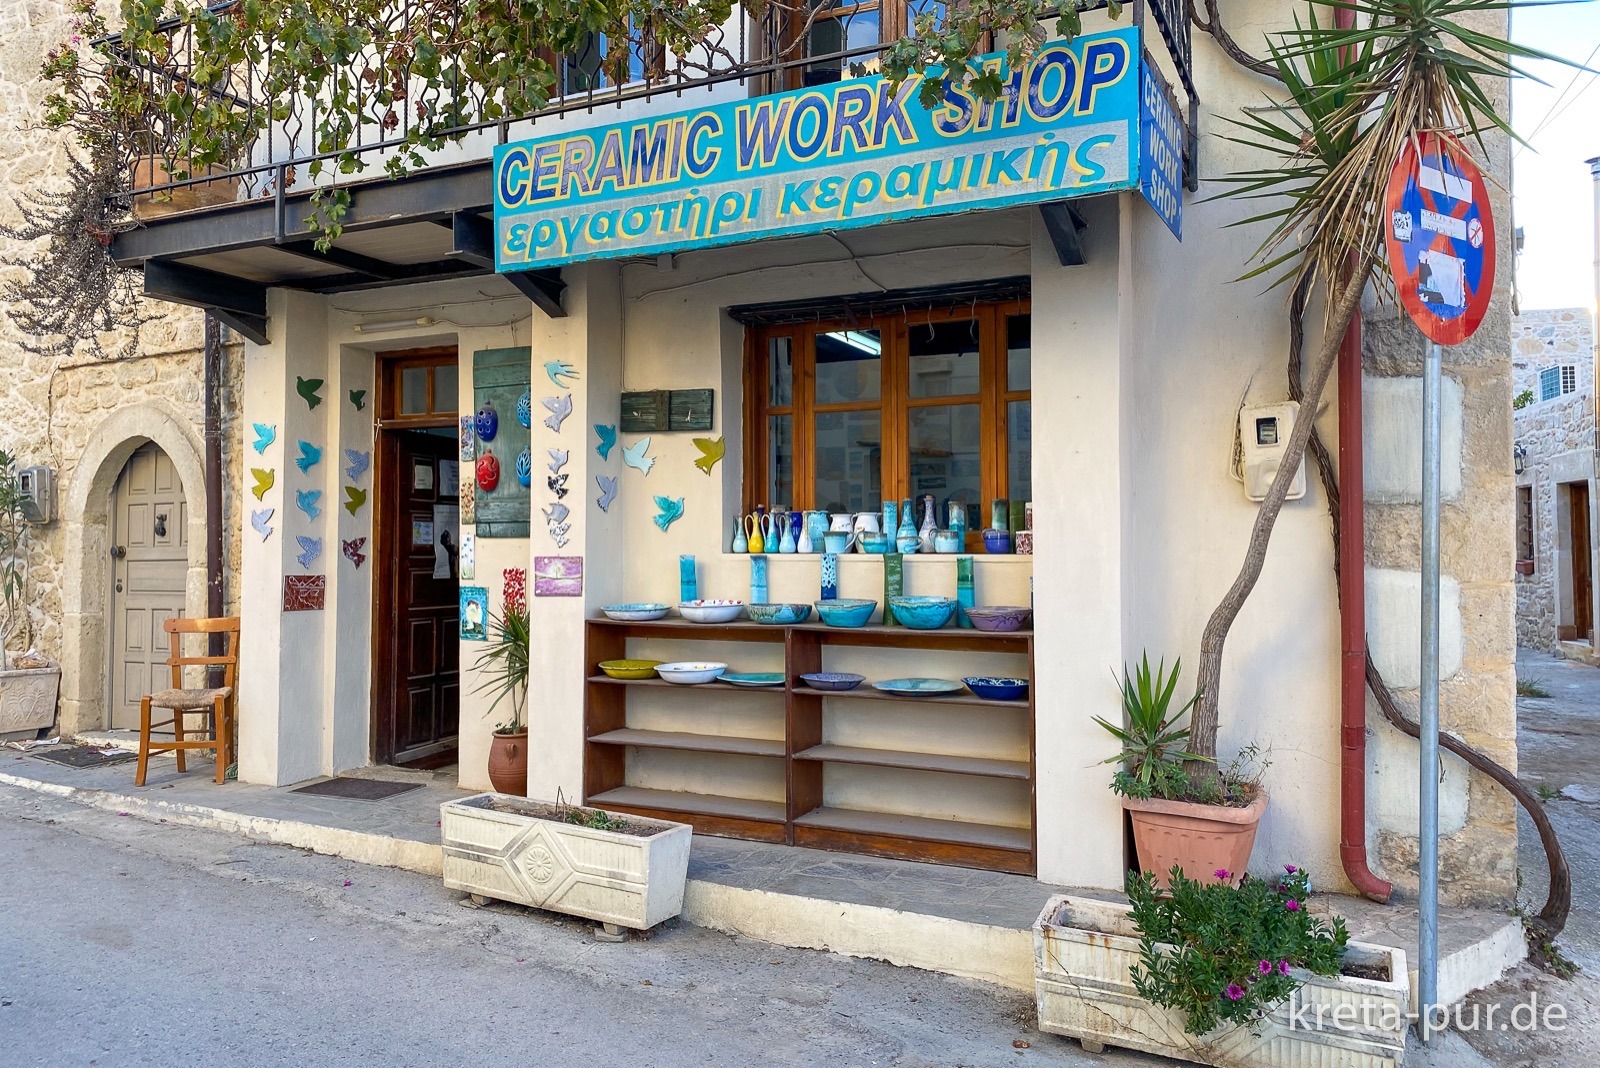 The ceramics store in Sivas...